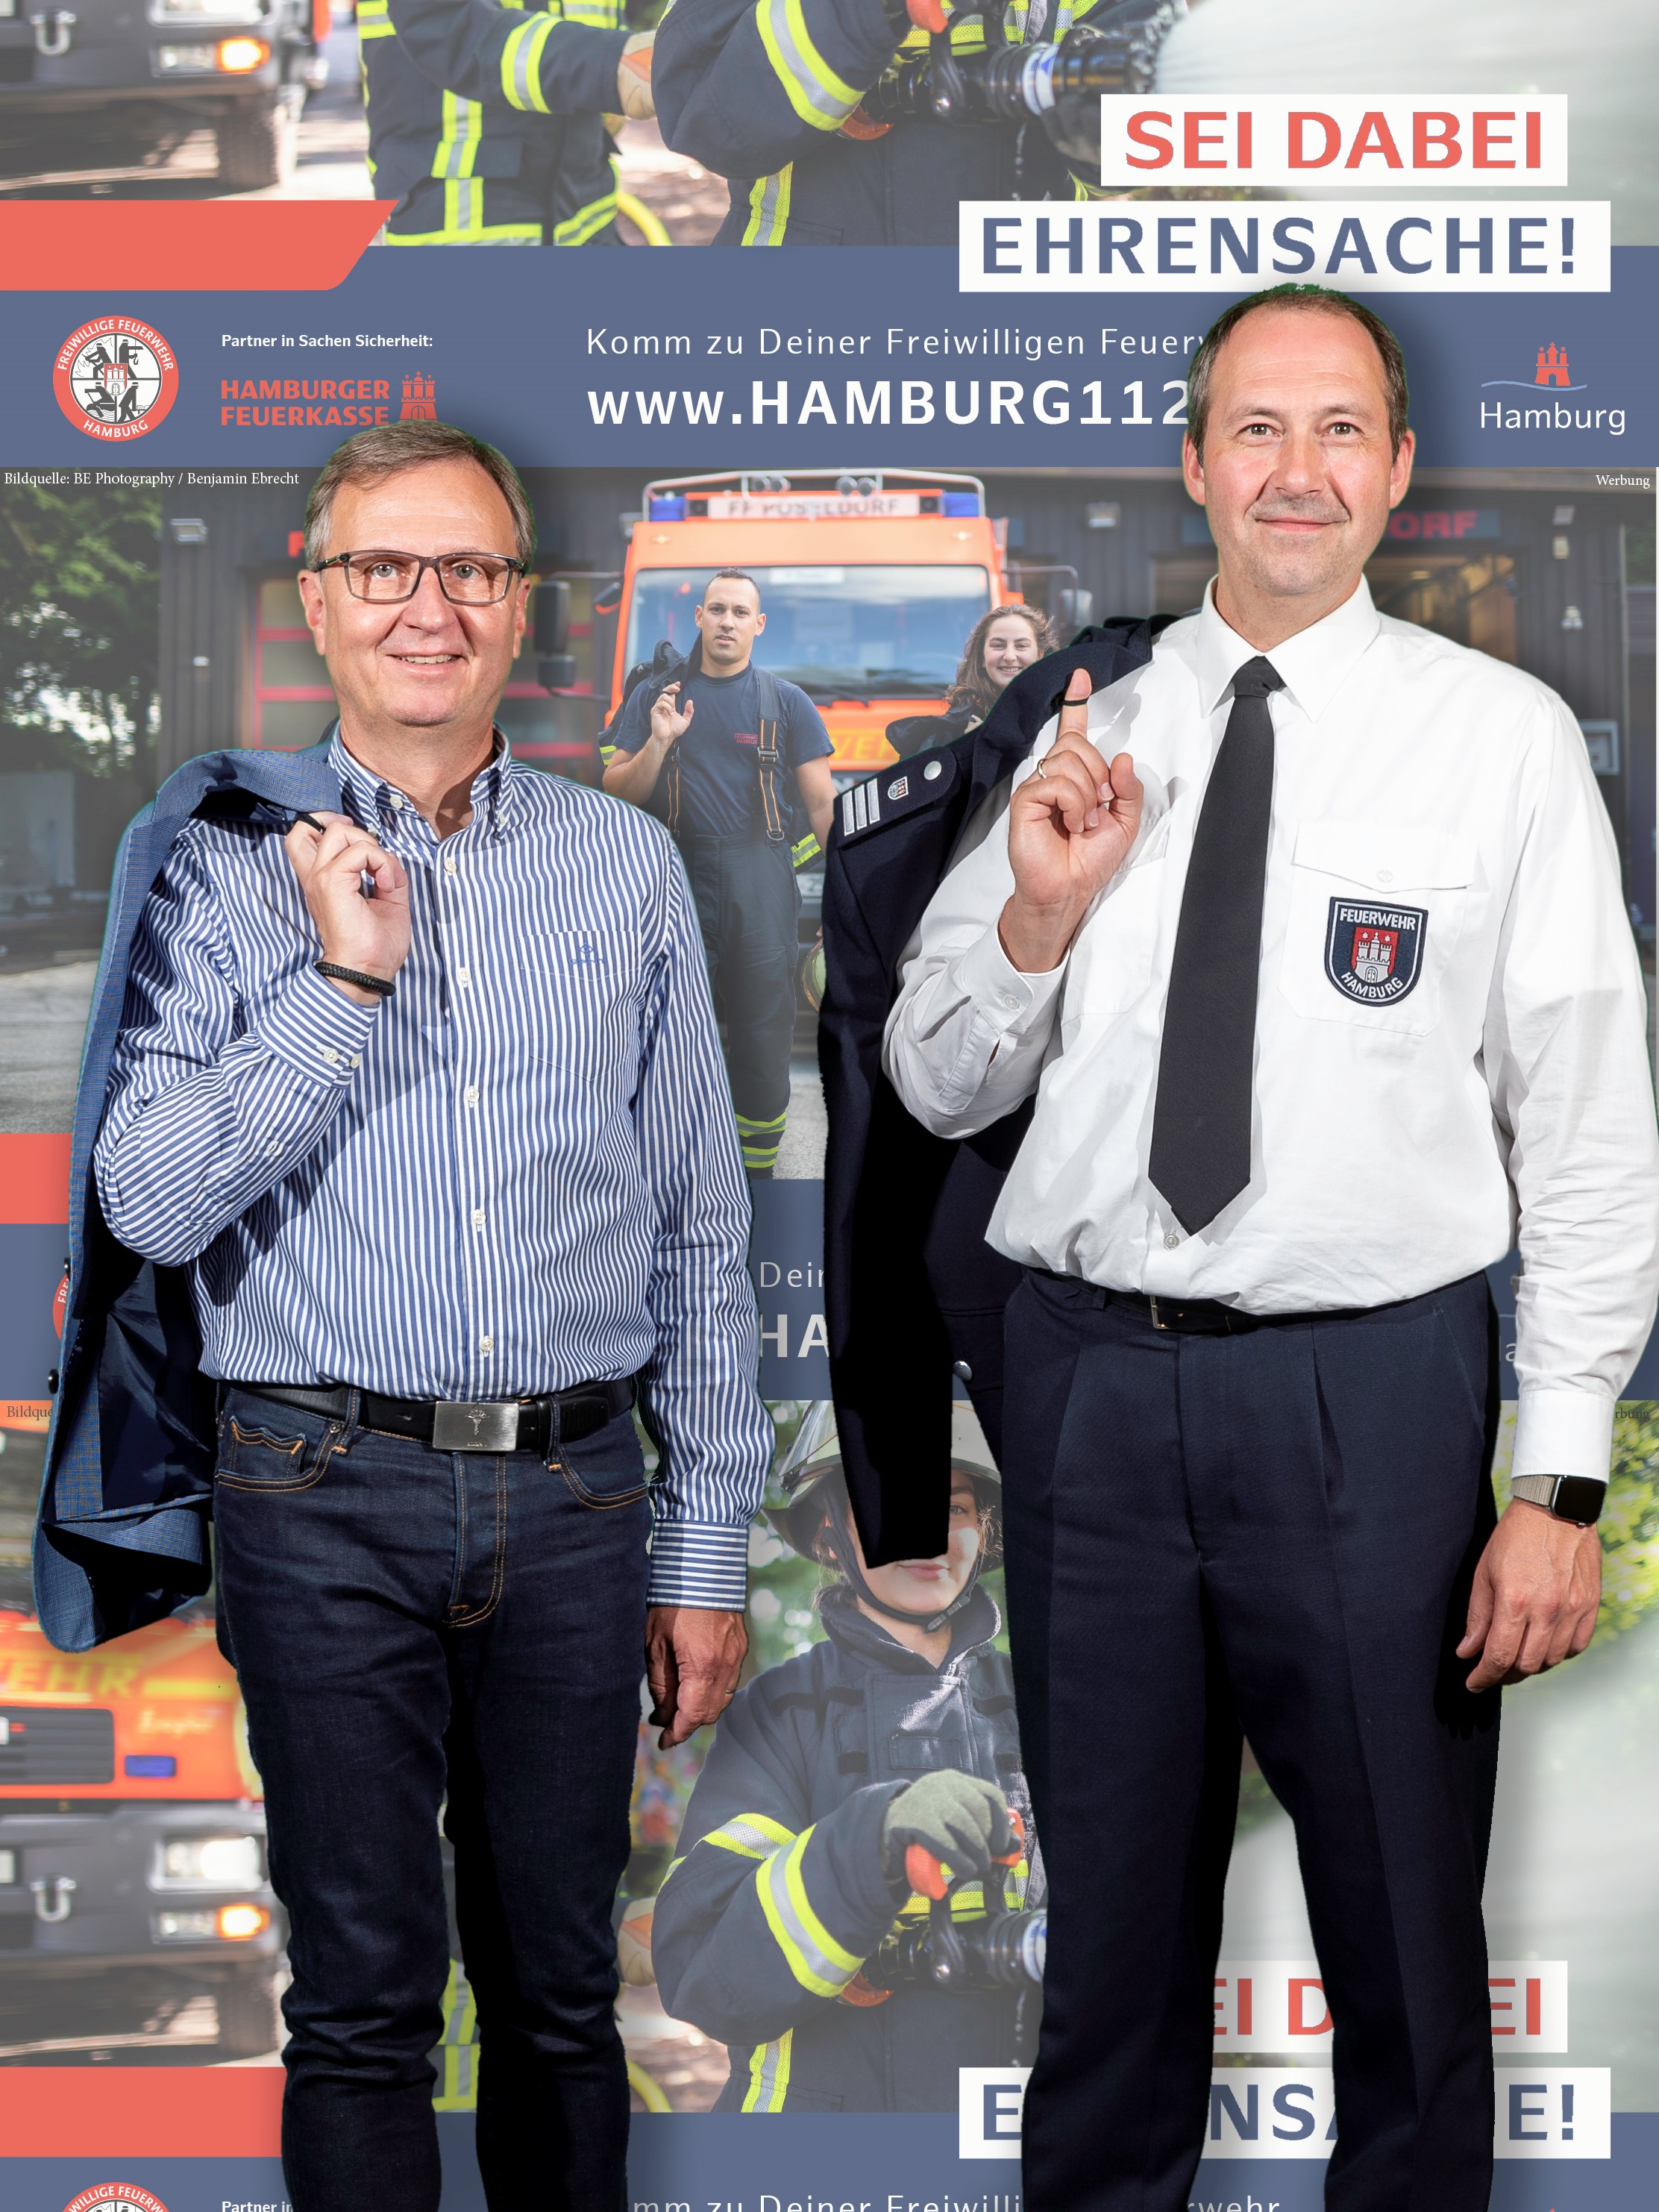 2022-09-05-Hamburger-Feuerkasse-fördert-Kampagne-Sei-dabei-Ehrensache-original